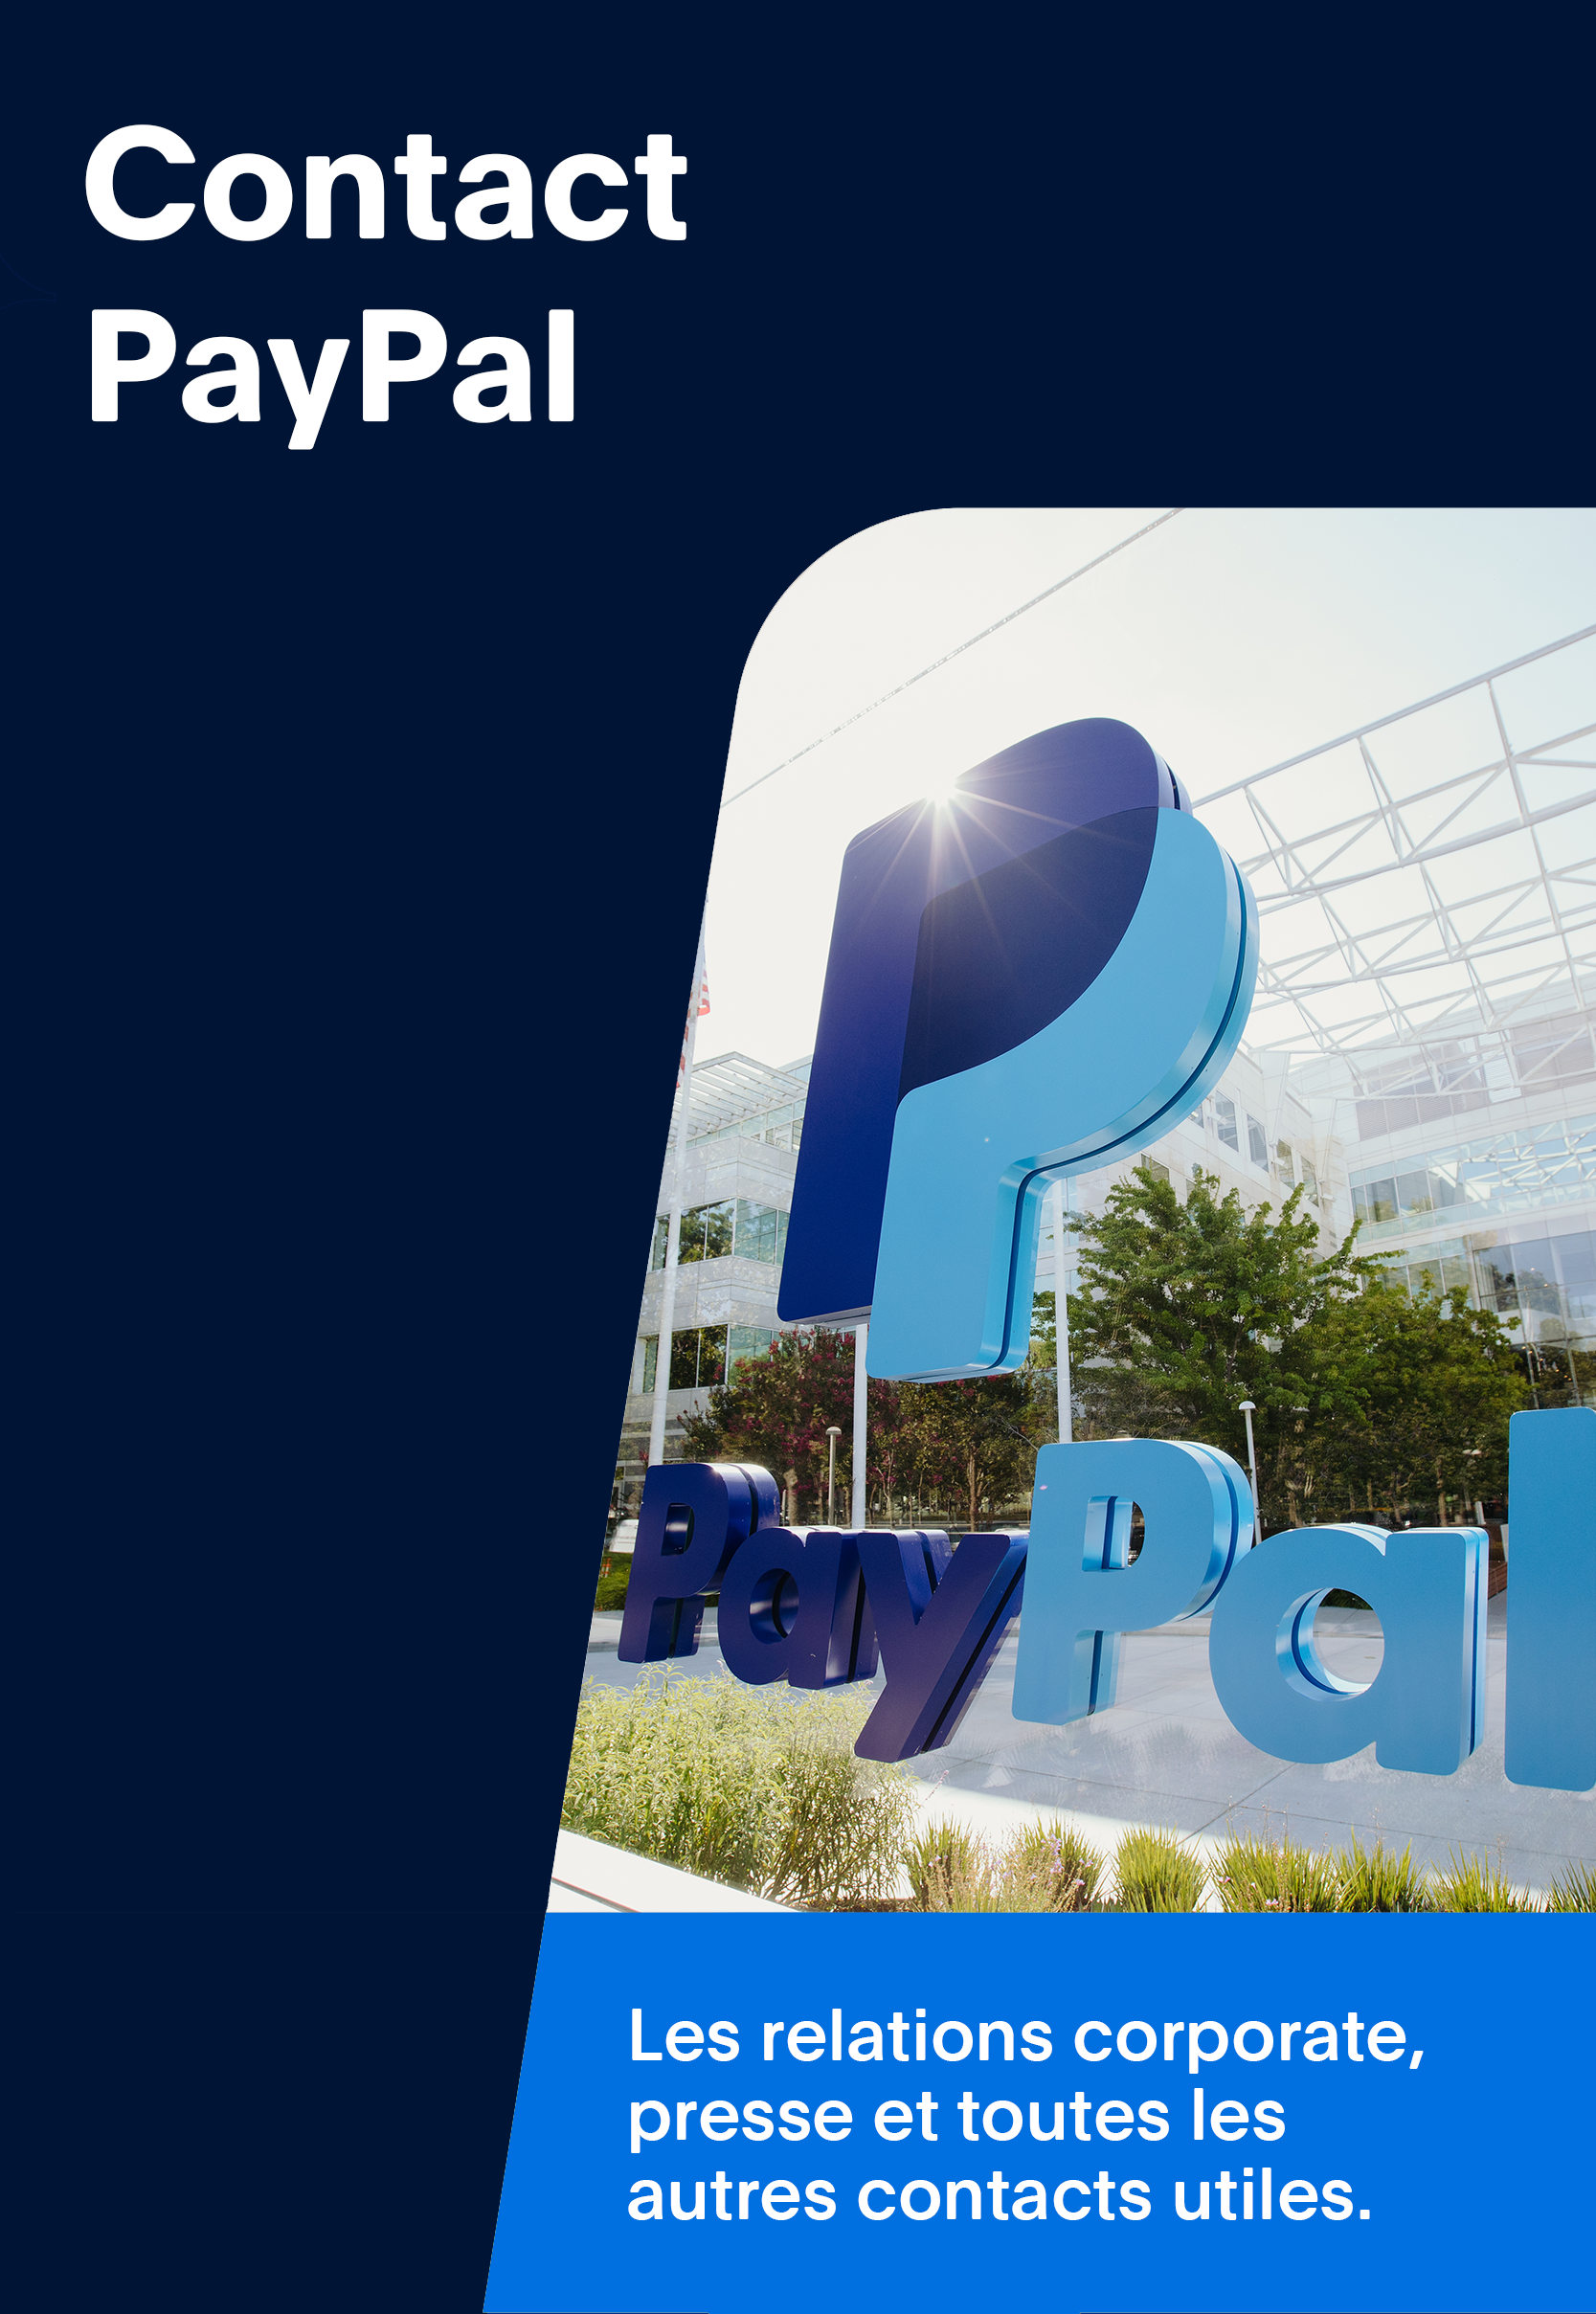 Contact PayPal: Ouvrir dans un nouvel onglet